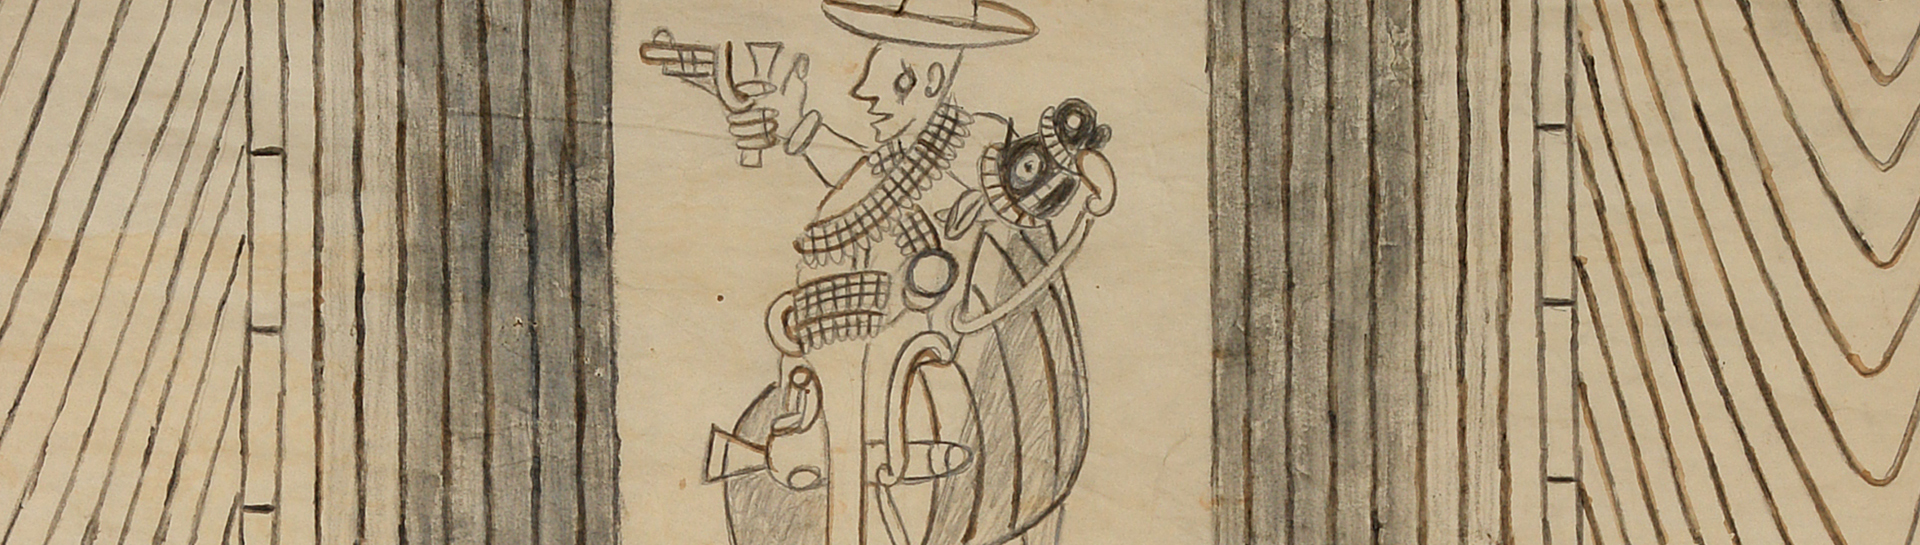 Martín Ramírez detail of man on horse